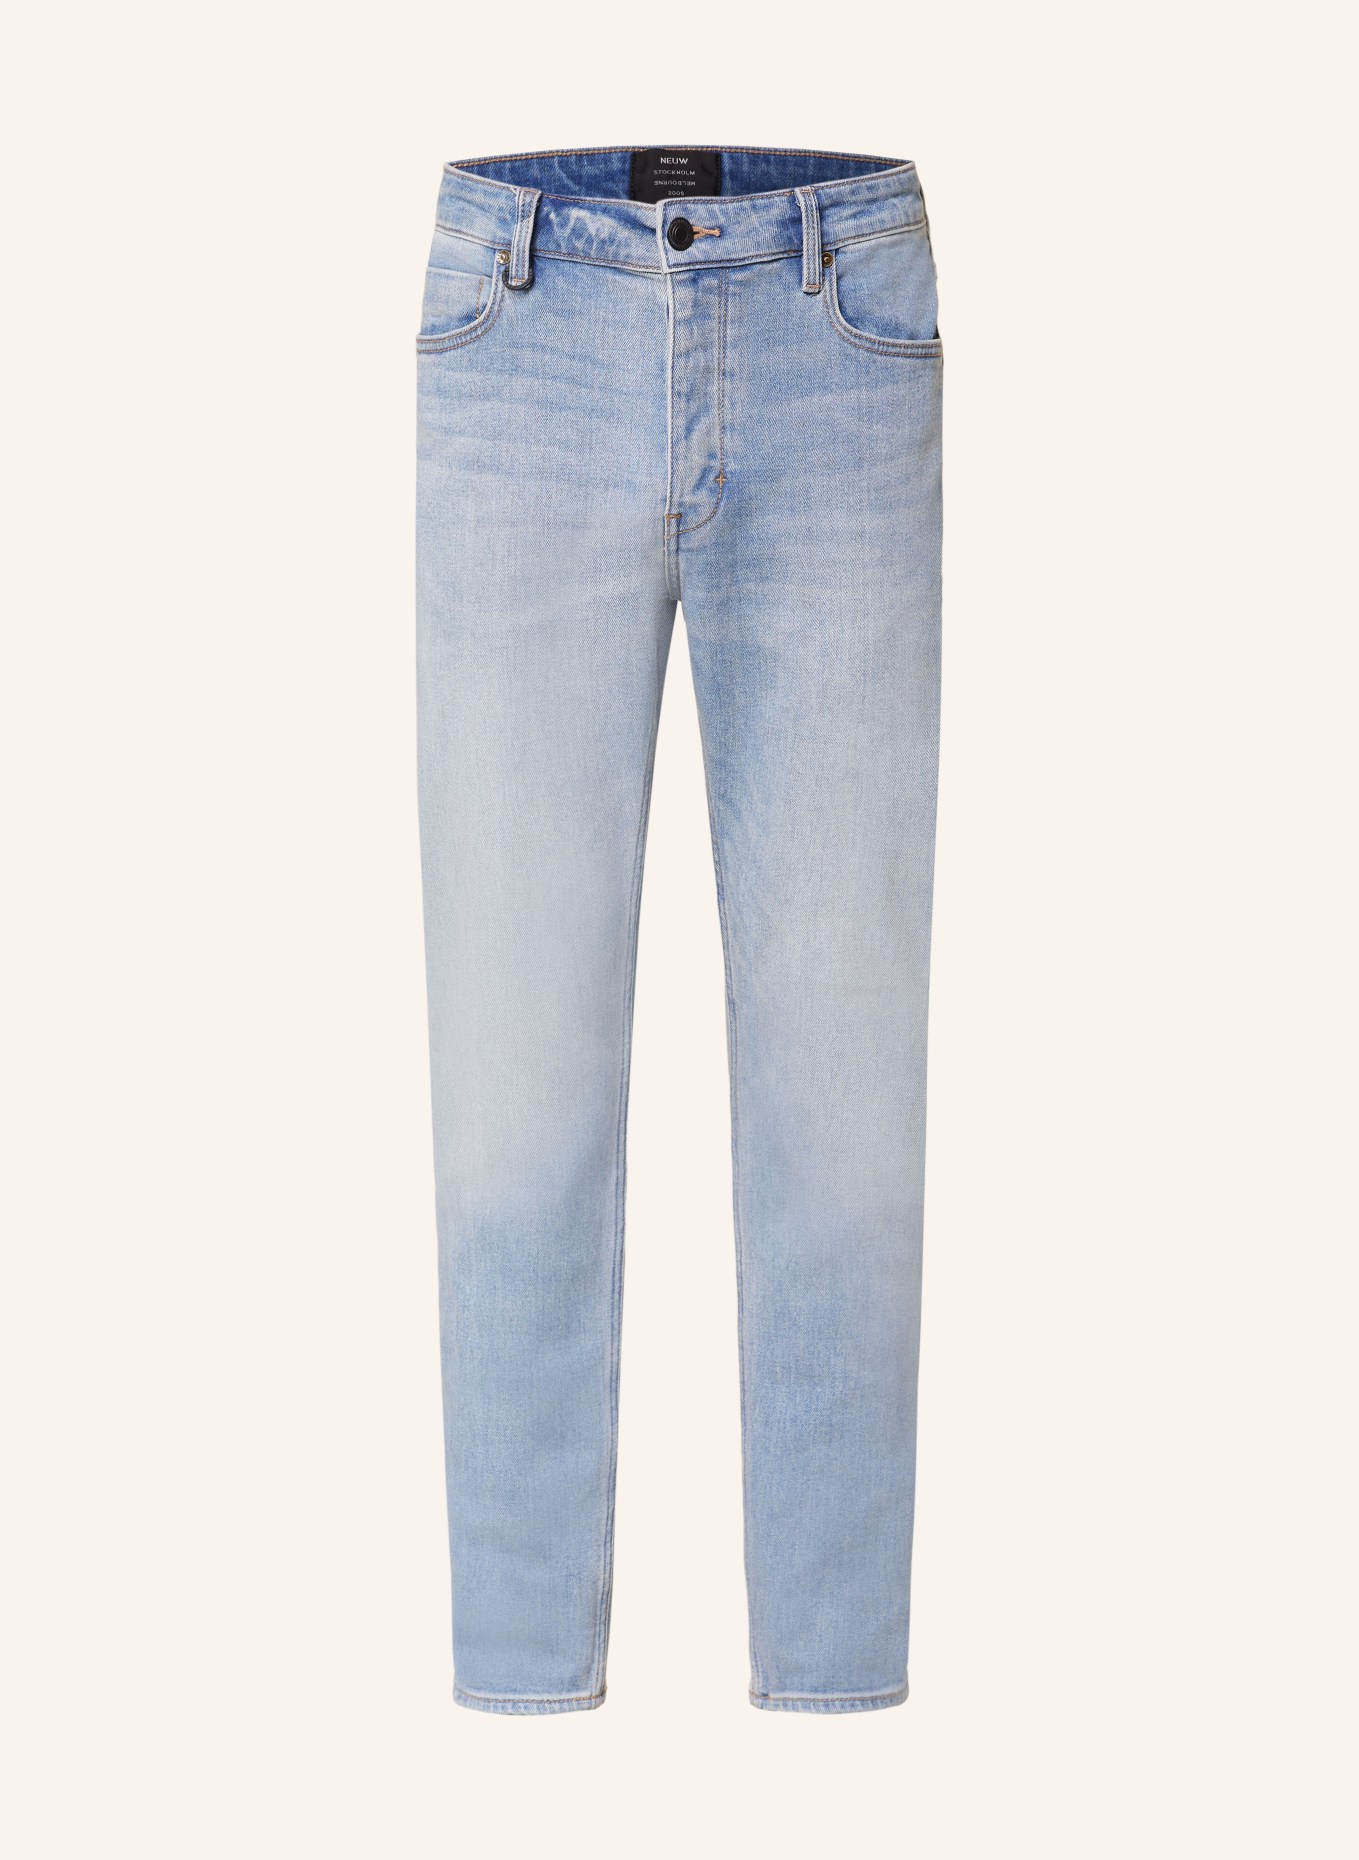 NEUW Jeans RAY Slim Tapered Fit, Farbe: 6924 BLUE (Bild 1)